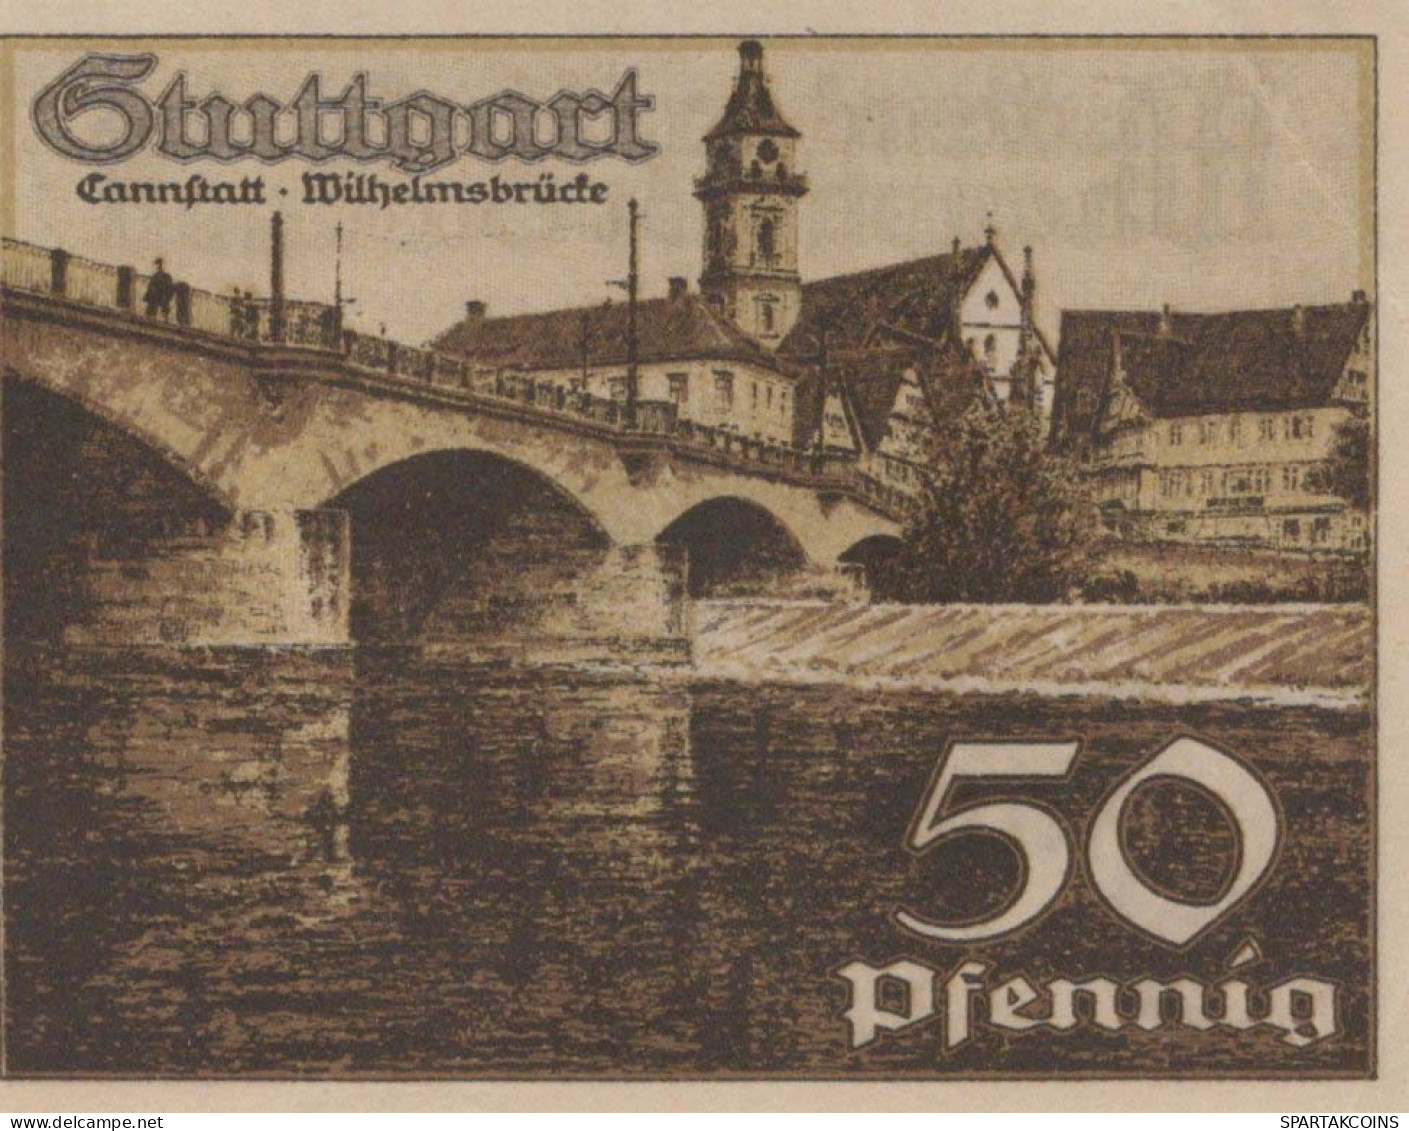 50 PFENNIG 1921 Stadt STUTTGART Württemberg UNC DEUTSCHLAND Notgeld #PC422 - Lokale Ausgaben